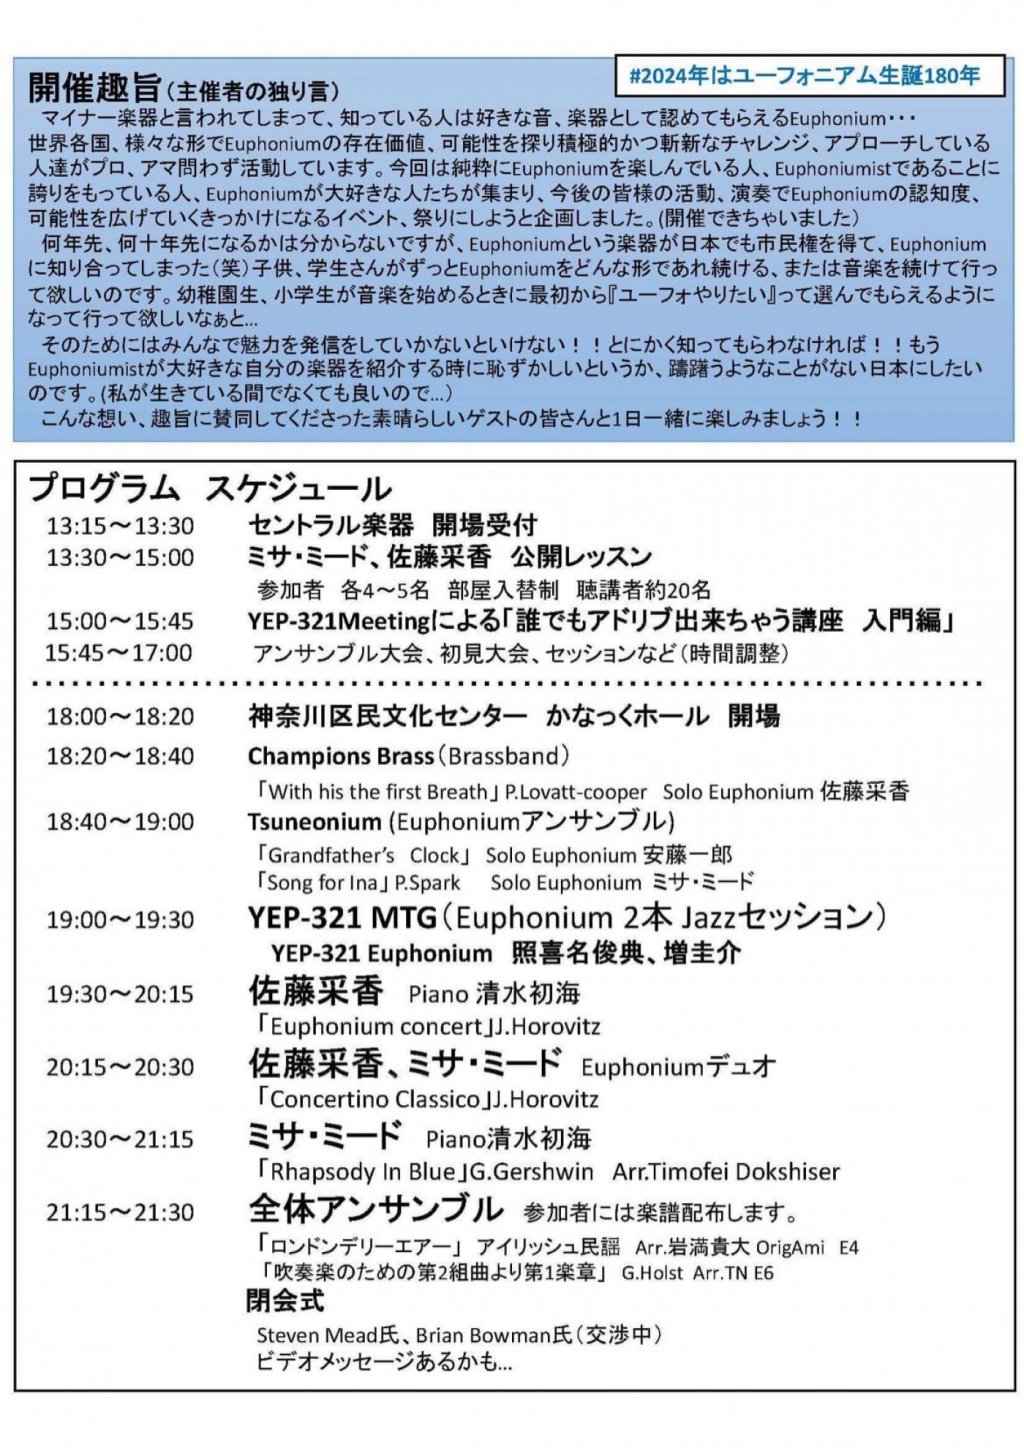 1st Japan Euphonium Festival in YOKOHAMA